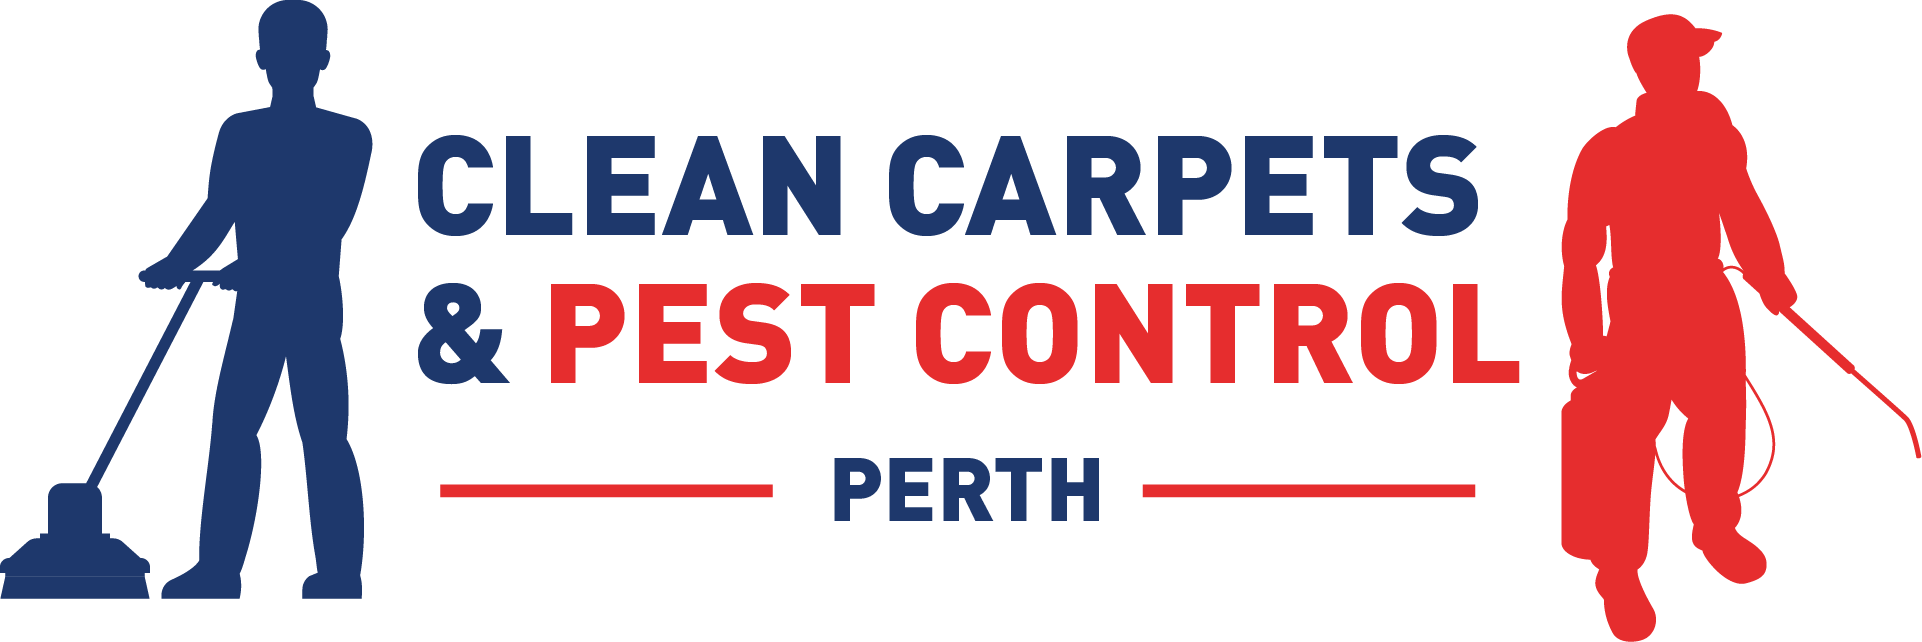 Clean Carpets Perth 